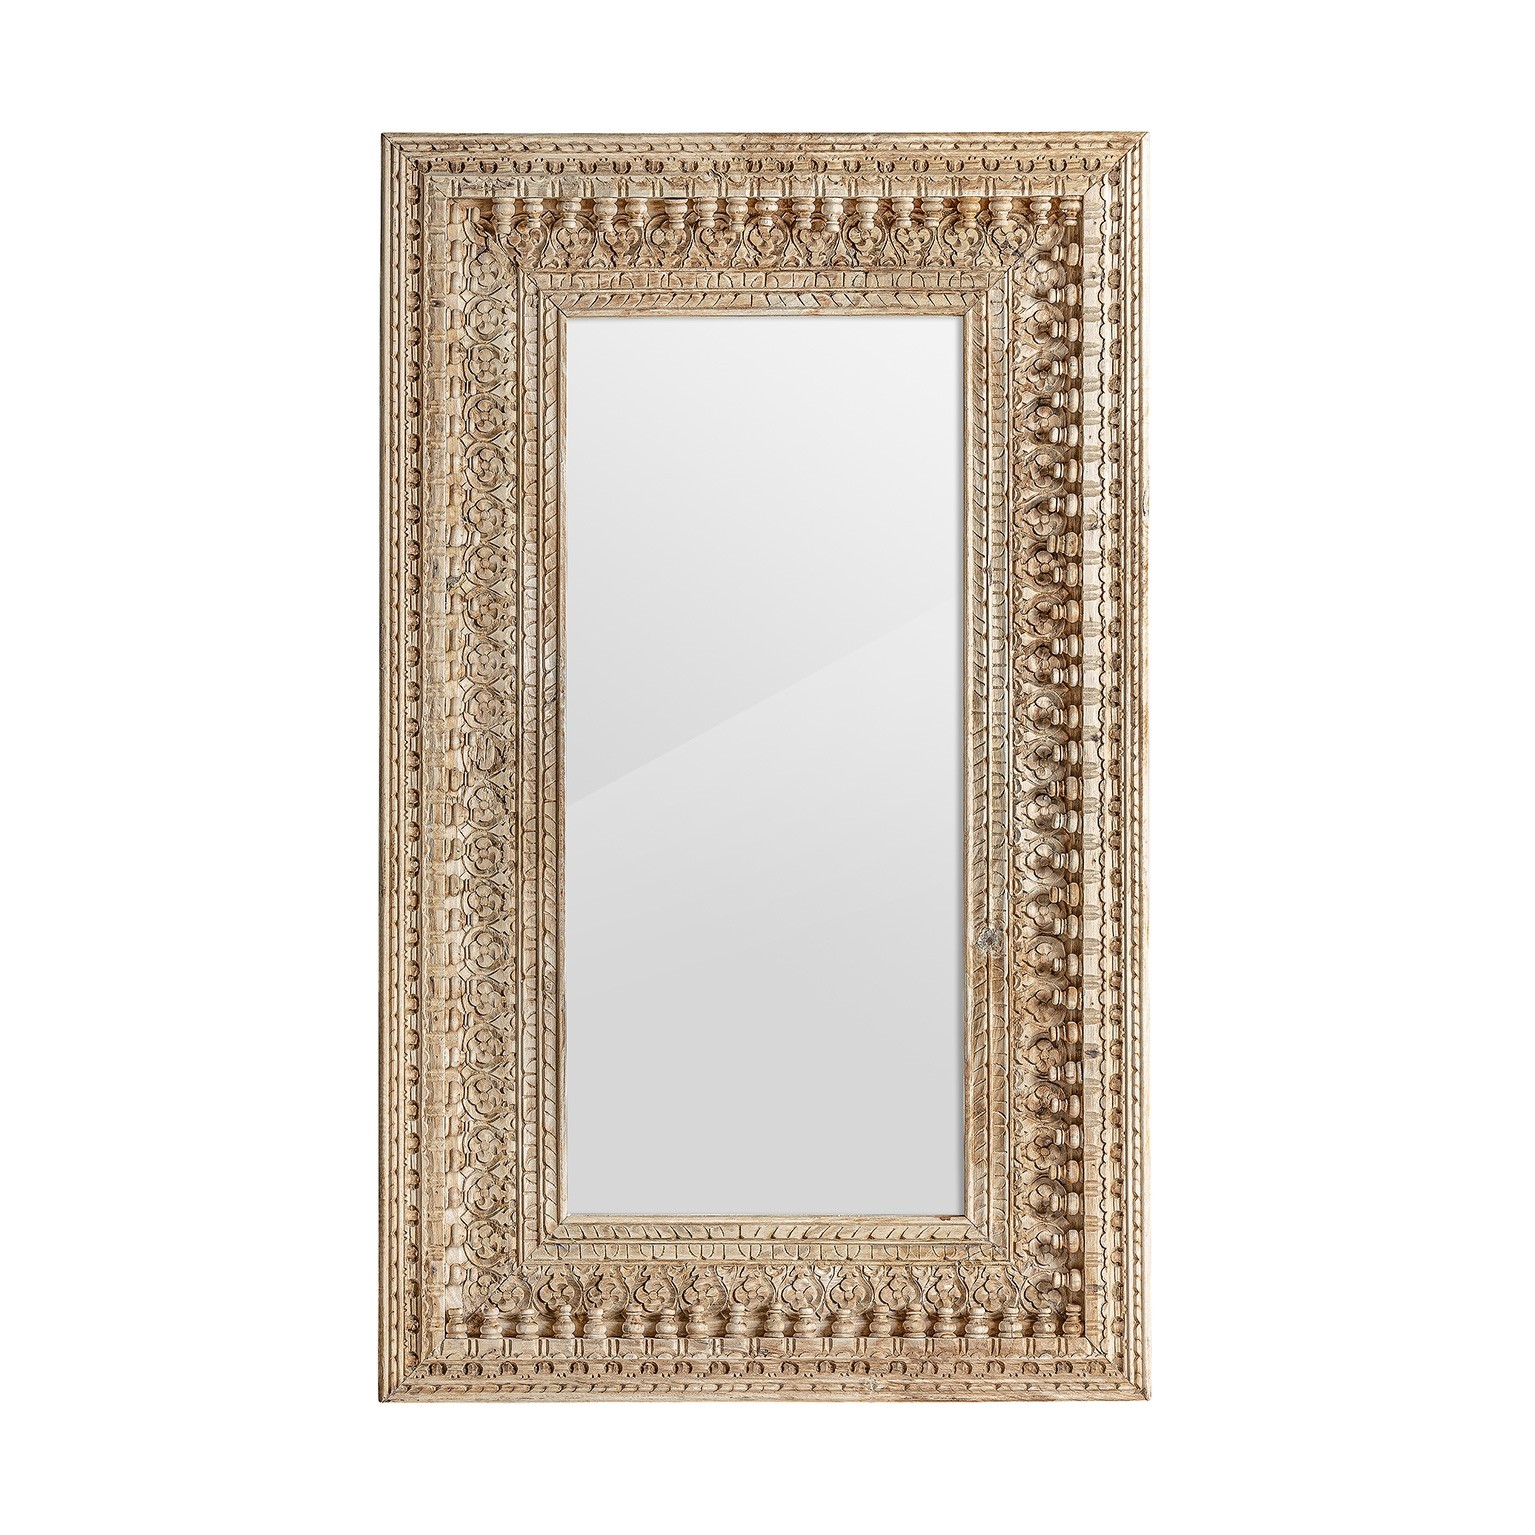 Estila Orientální nástěnné zrcadlo Vallexa obdélníkového tvaru s vyřezávaným masivním rámem 150cm